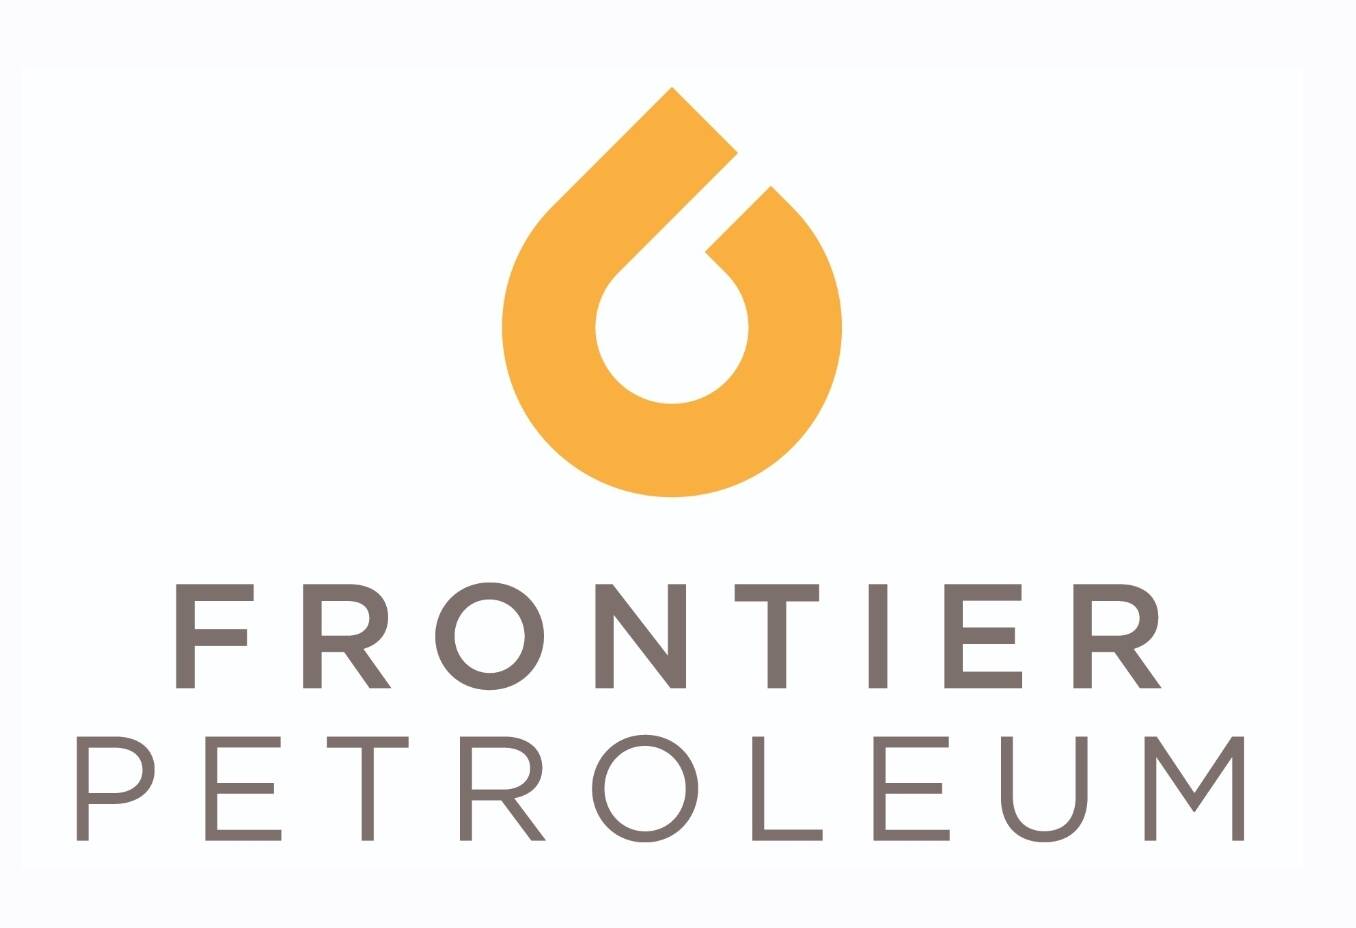 Frontier Petroleum